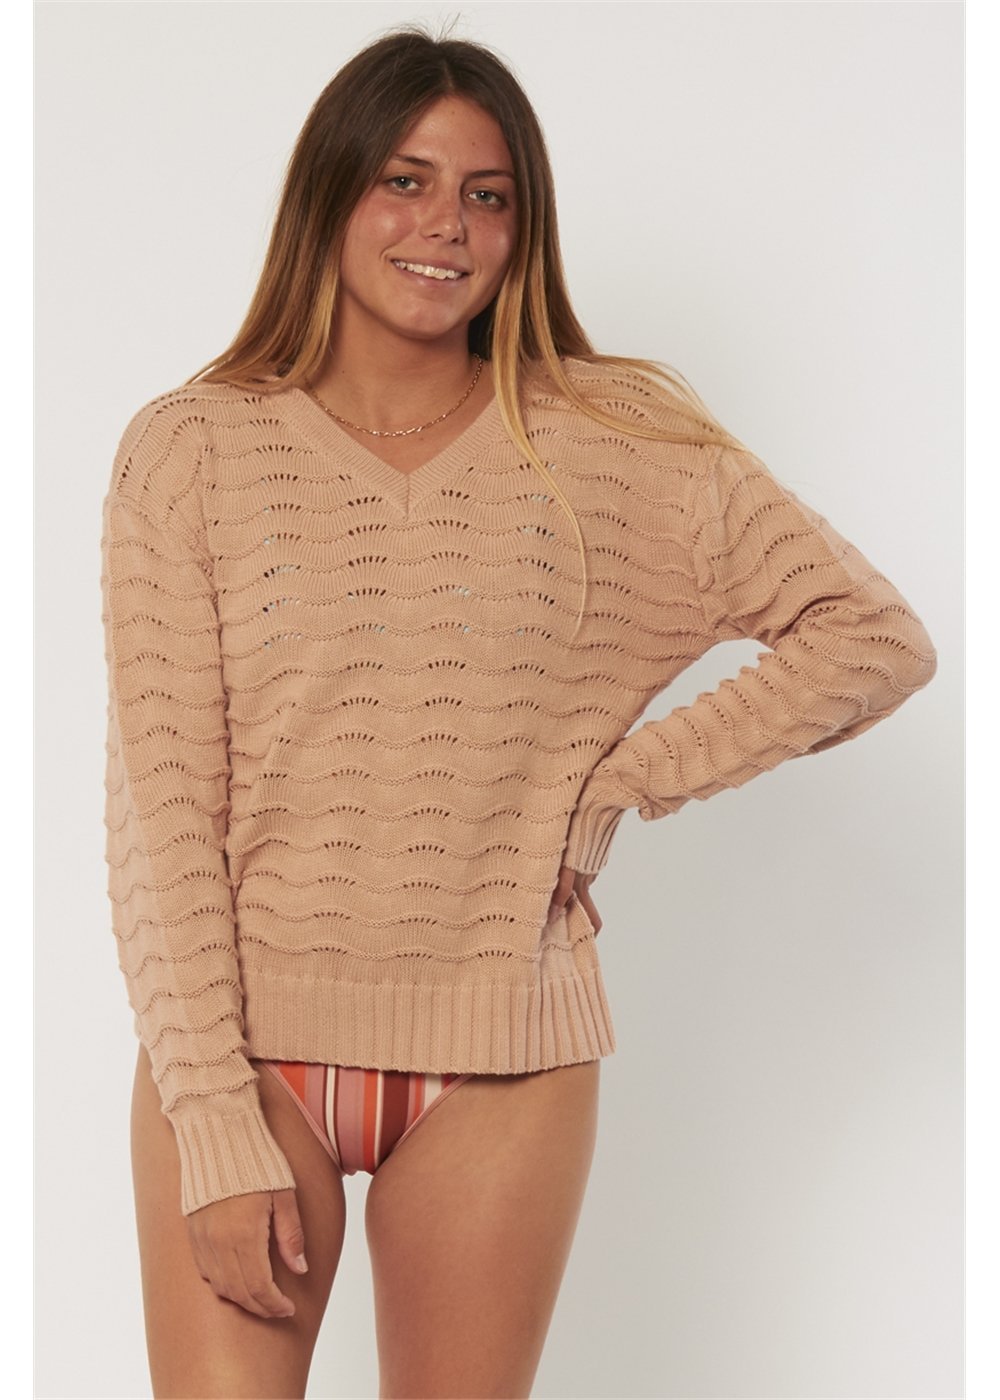 Sisstr Aria Longsleeve Knit Sweater (Pink Smoke) - KS Boardriders Surf Shop